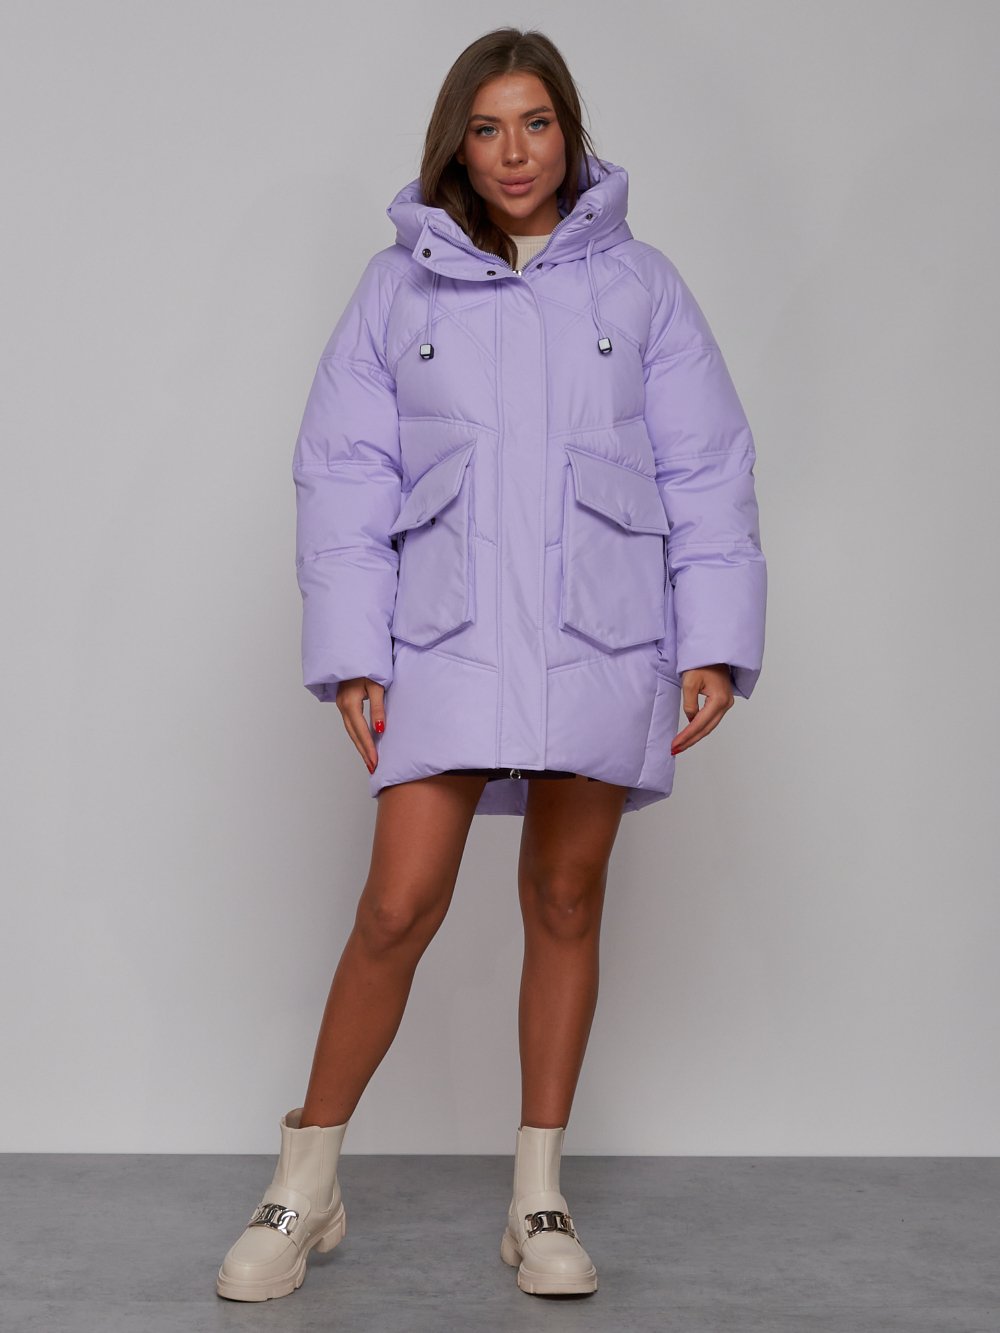 Купить оптом Зимняя женская куртка модная с капюшоном фиолетового цвета 52310F в Екатеринбурге